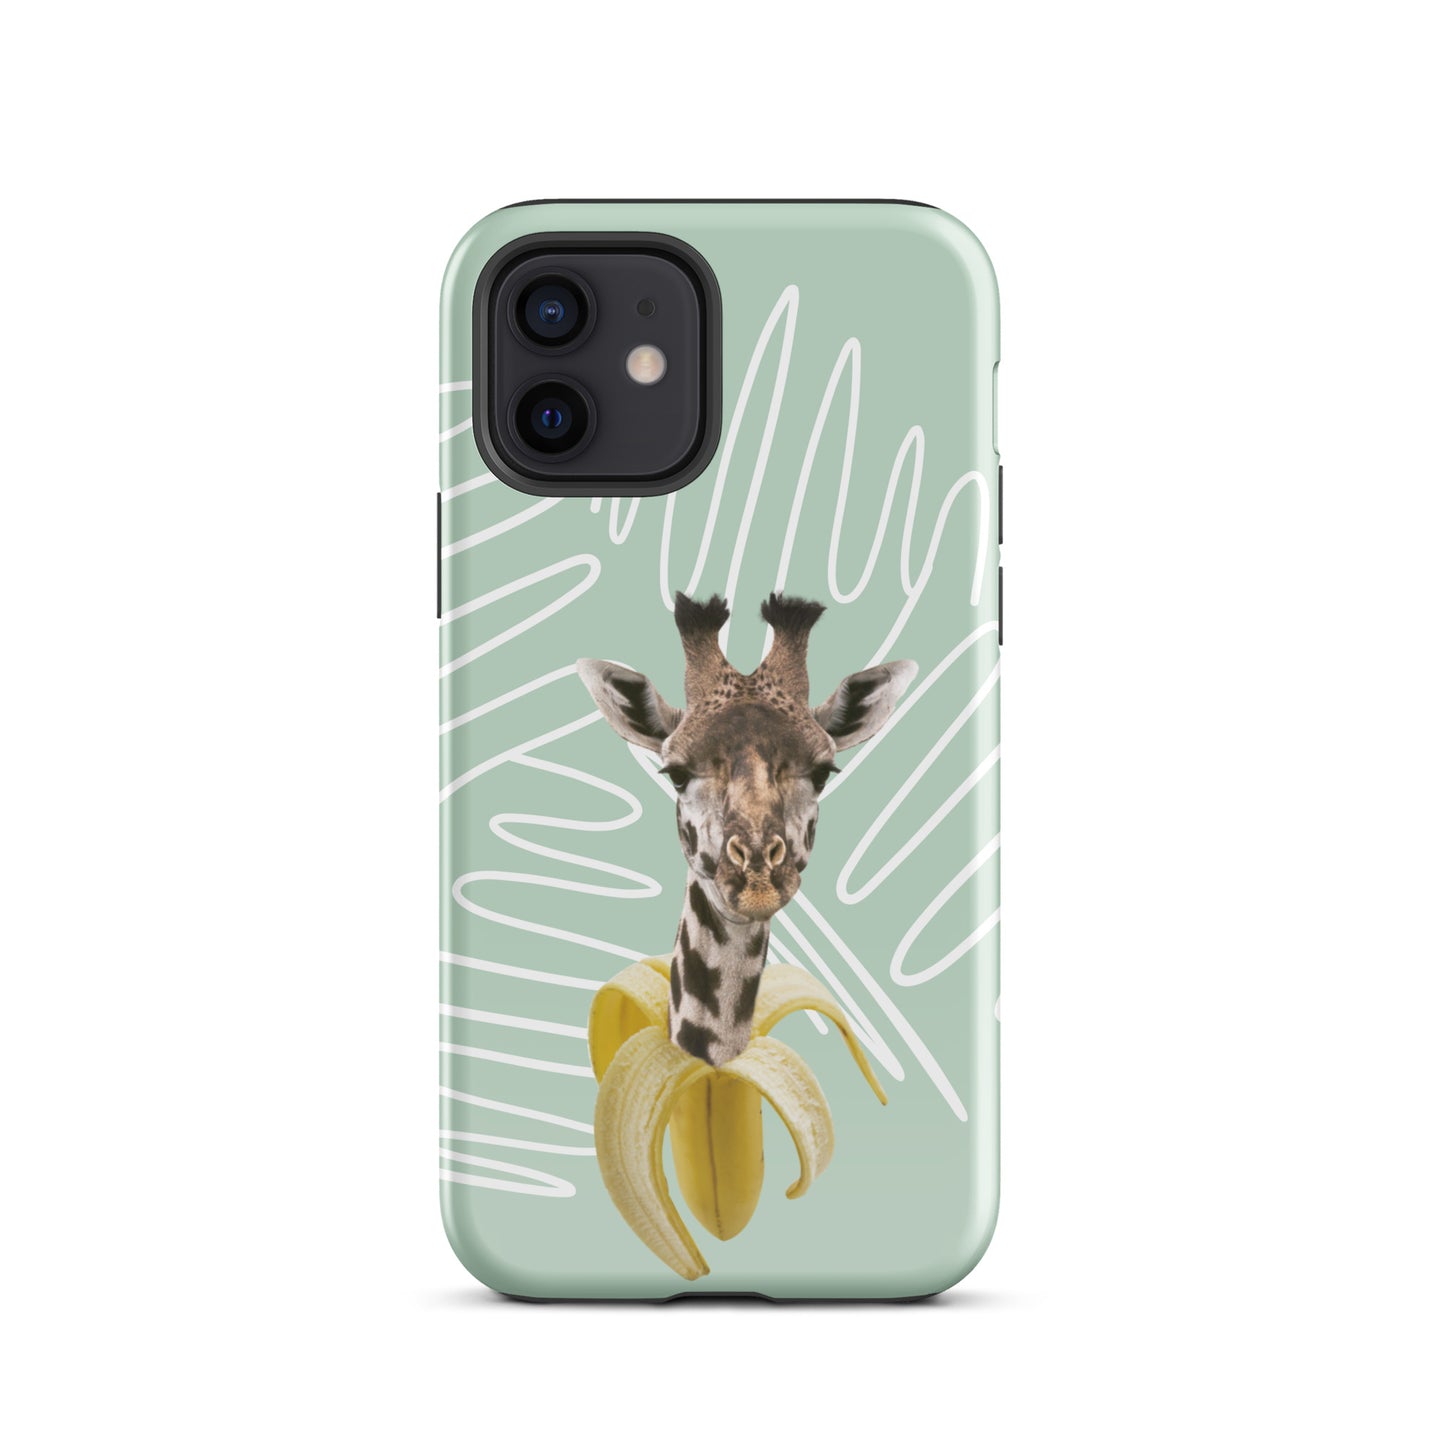 "Giraffe" iPhone® hard protective case